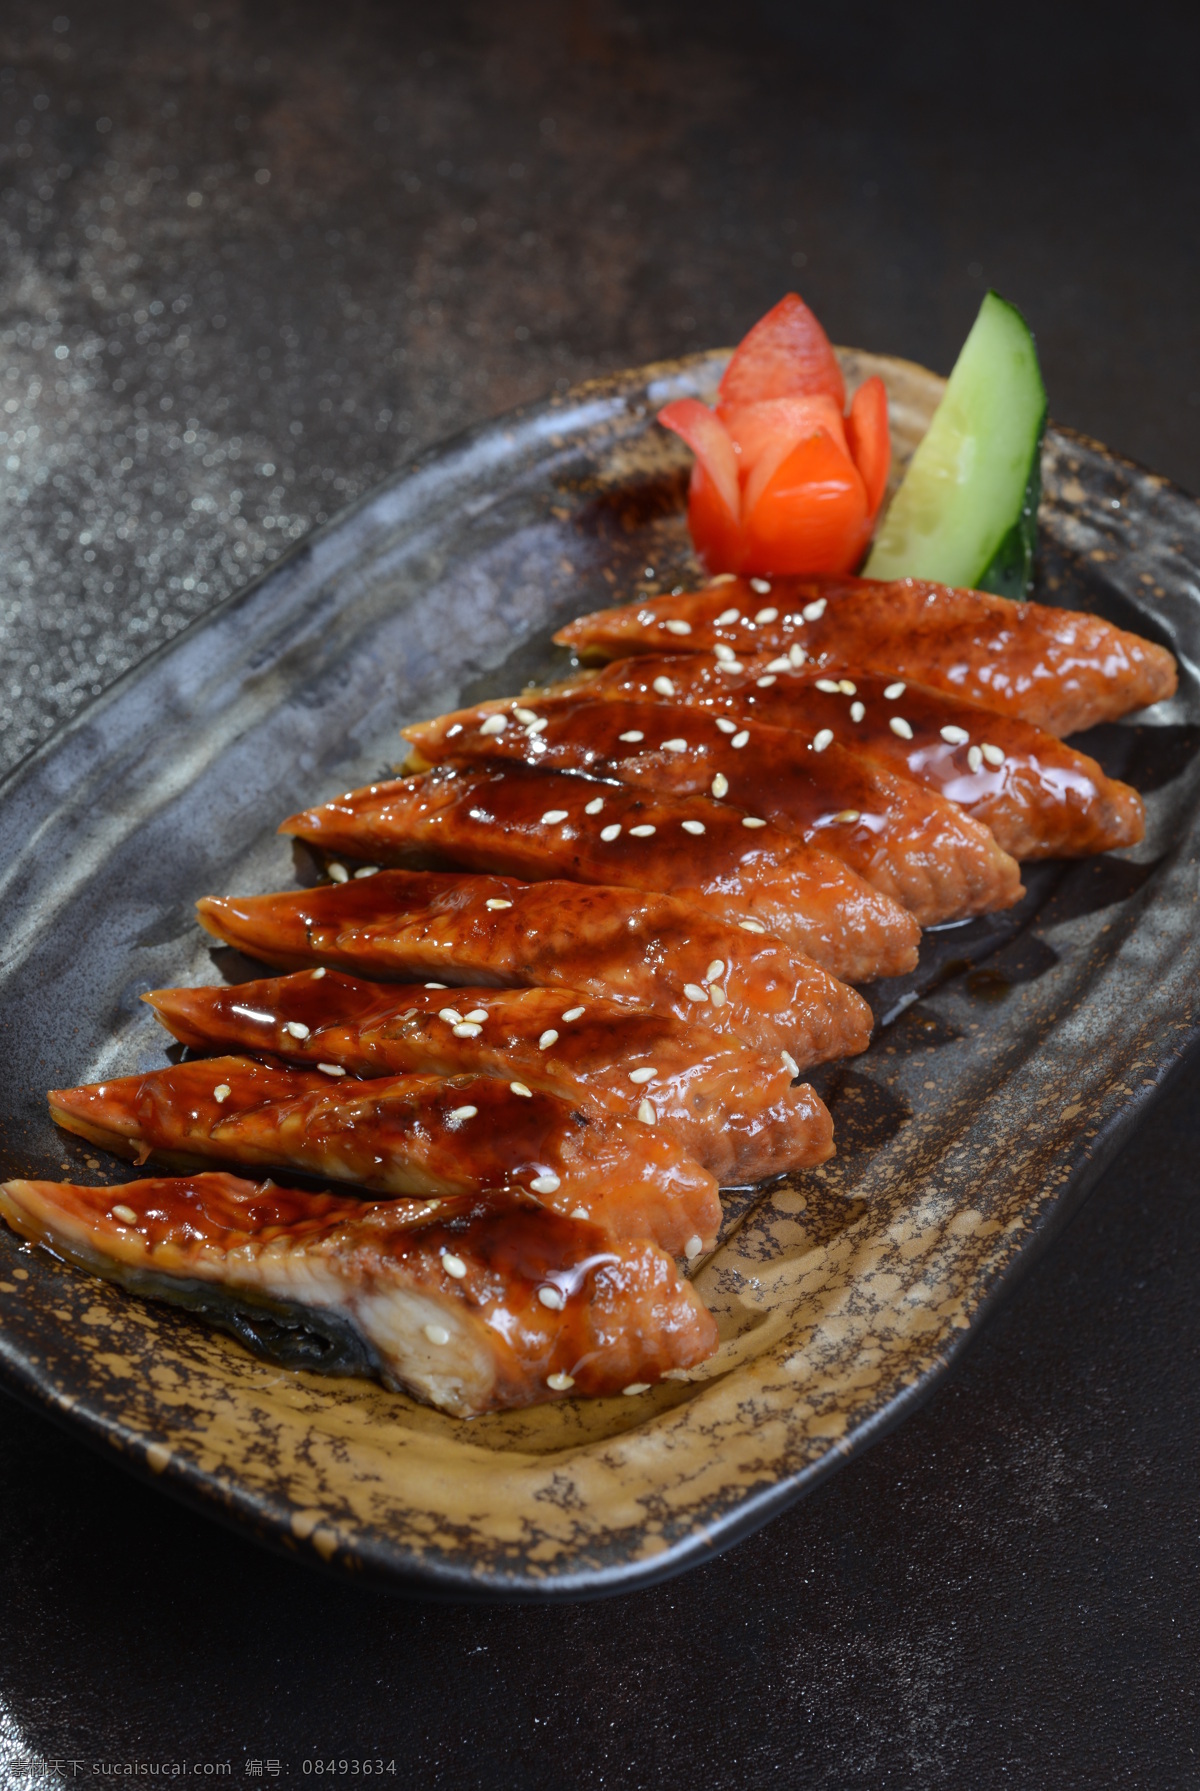 蒲烧鳗鱼 烤物 鳗鱼 日式美食 日式料理 餐饮美食 传统美食